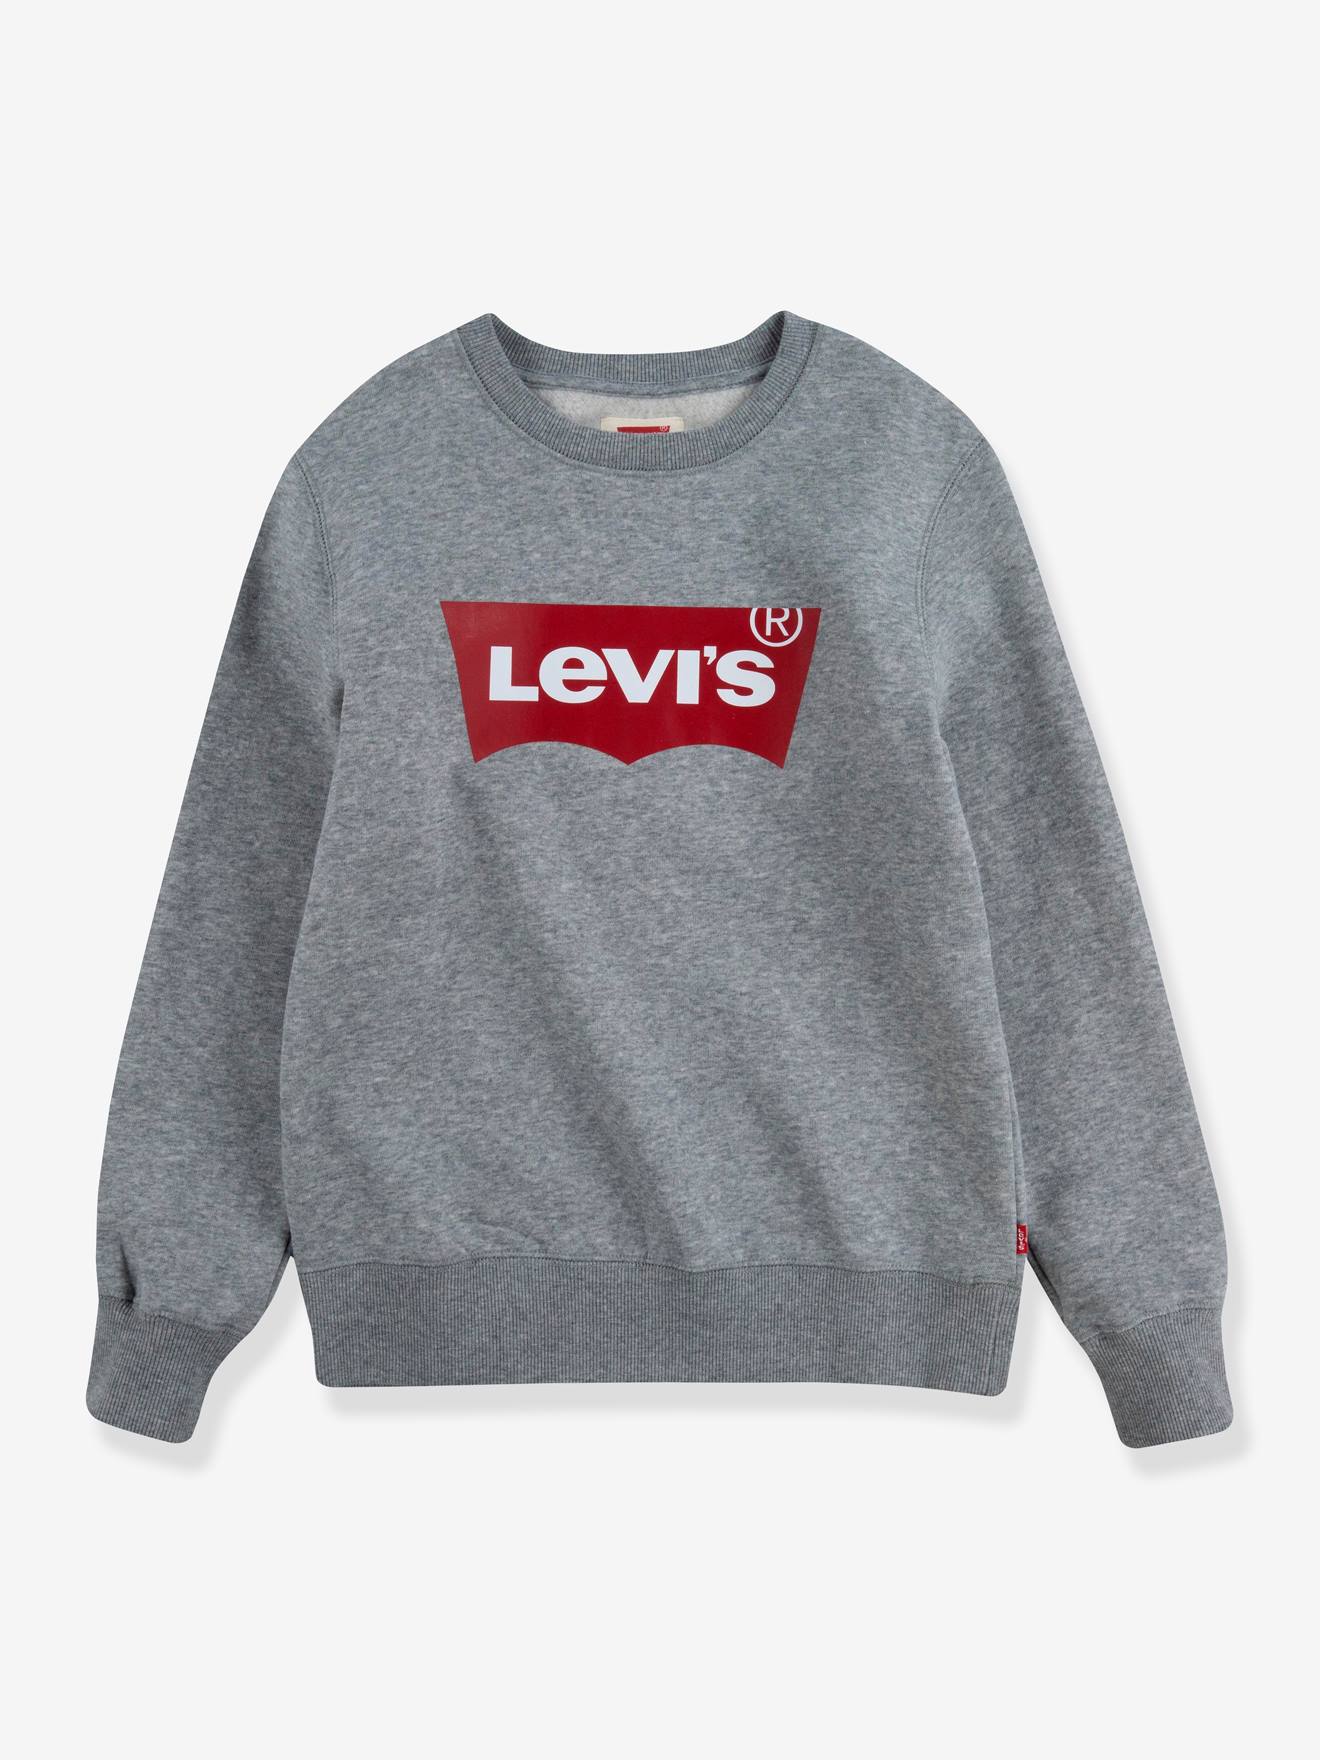 Oefenen vat doe alstublieft niet Sweater voor jongens Batwing Crewneck van Levi's® - grijs, Jongens